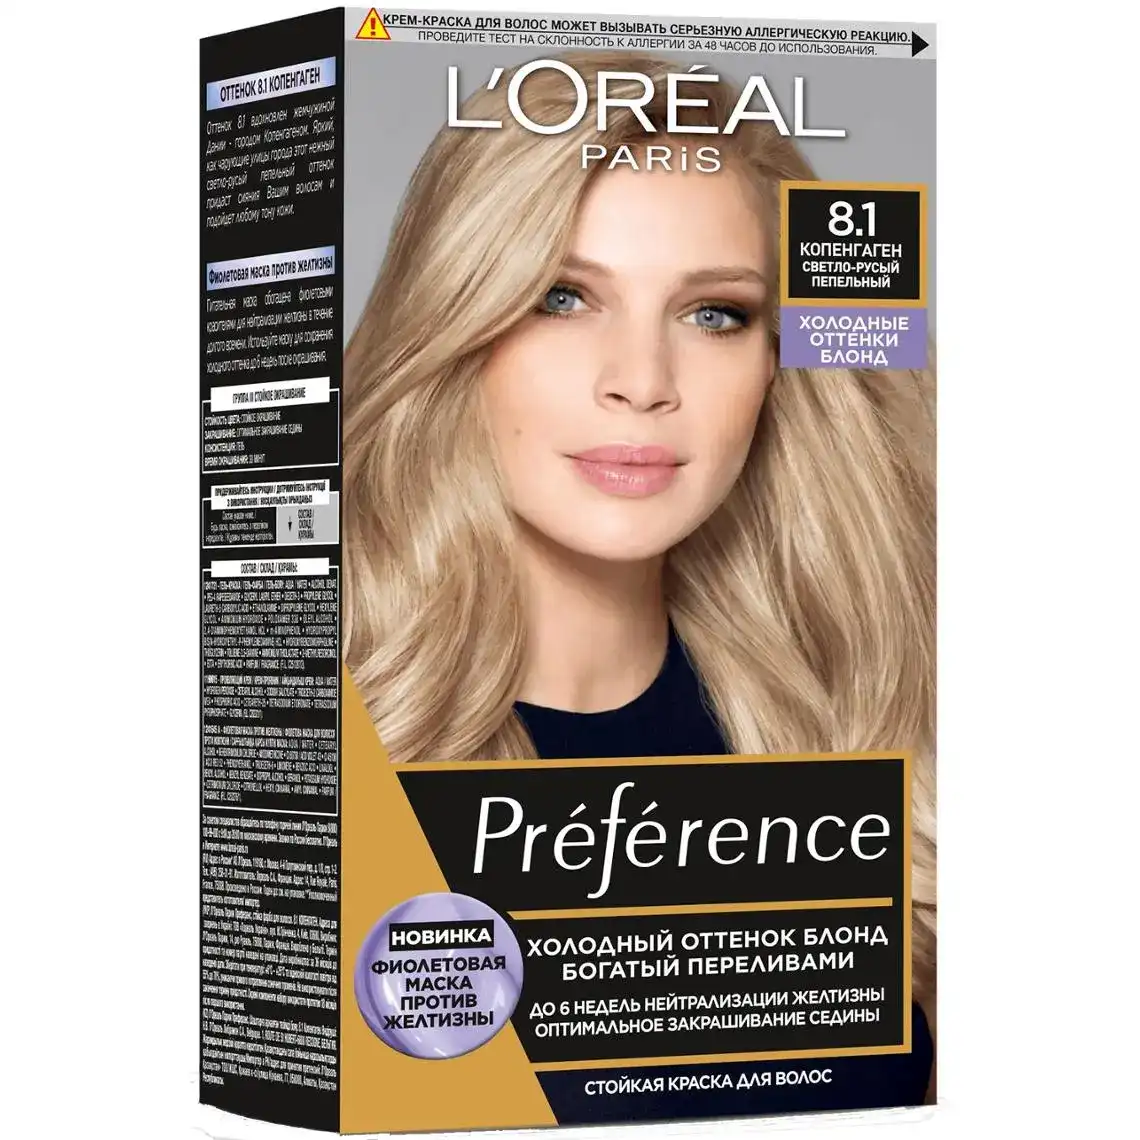 Крем-фарба для волосся L'Oreal Paris Preference 8.1 cвітло-русявий попелястий